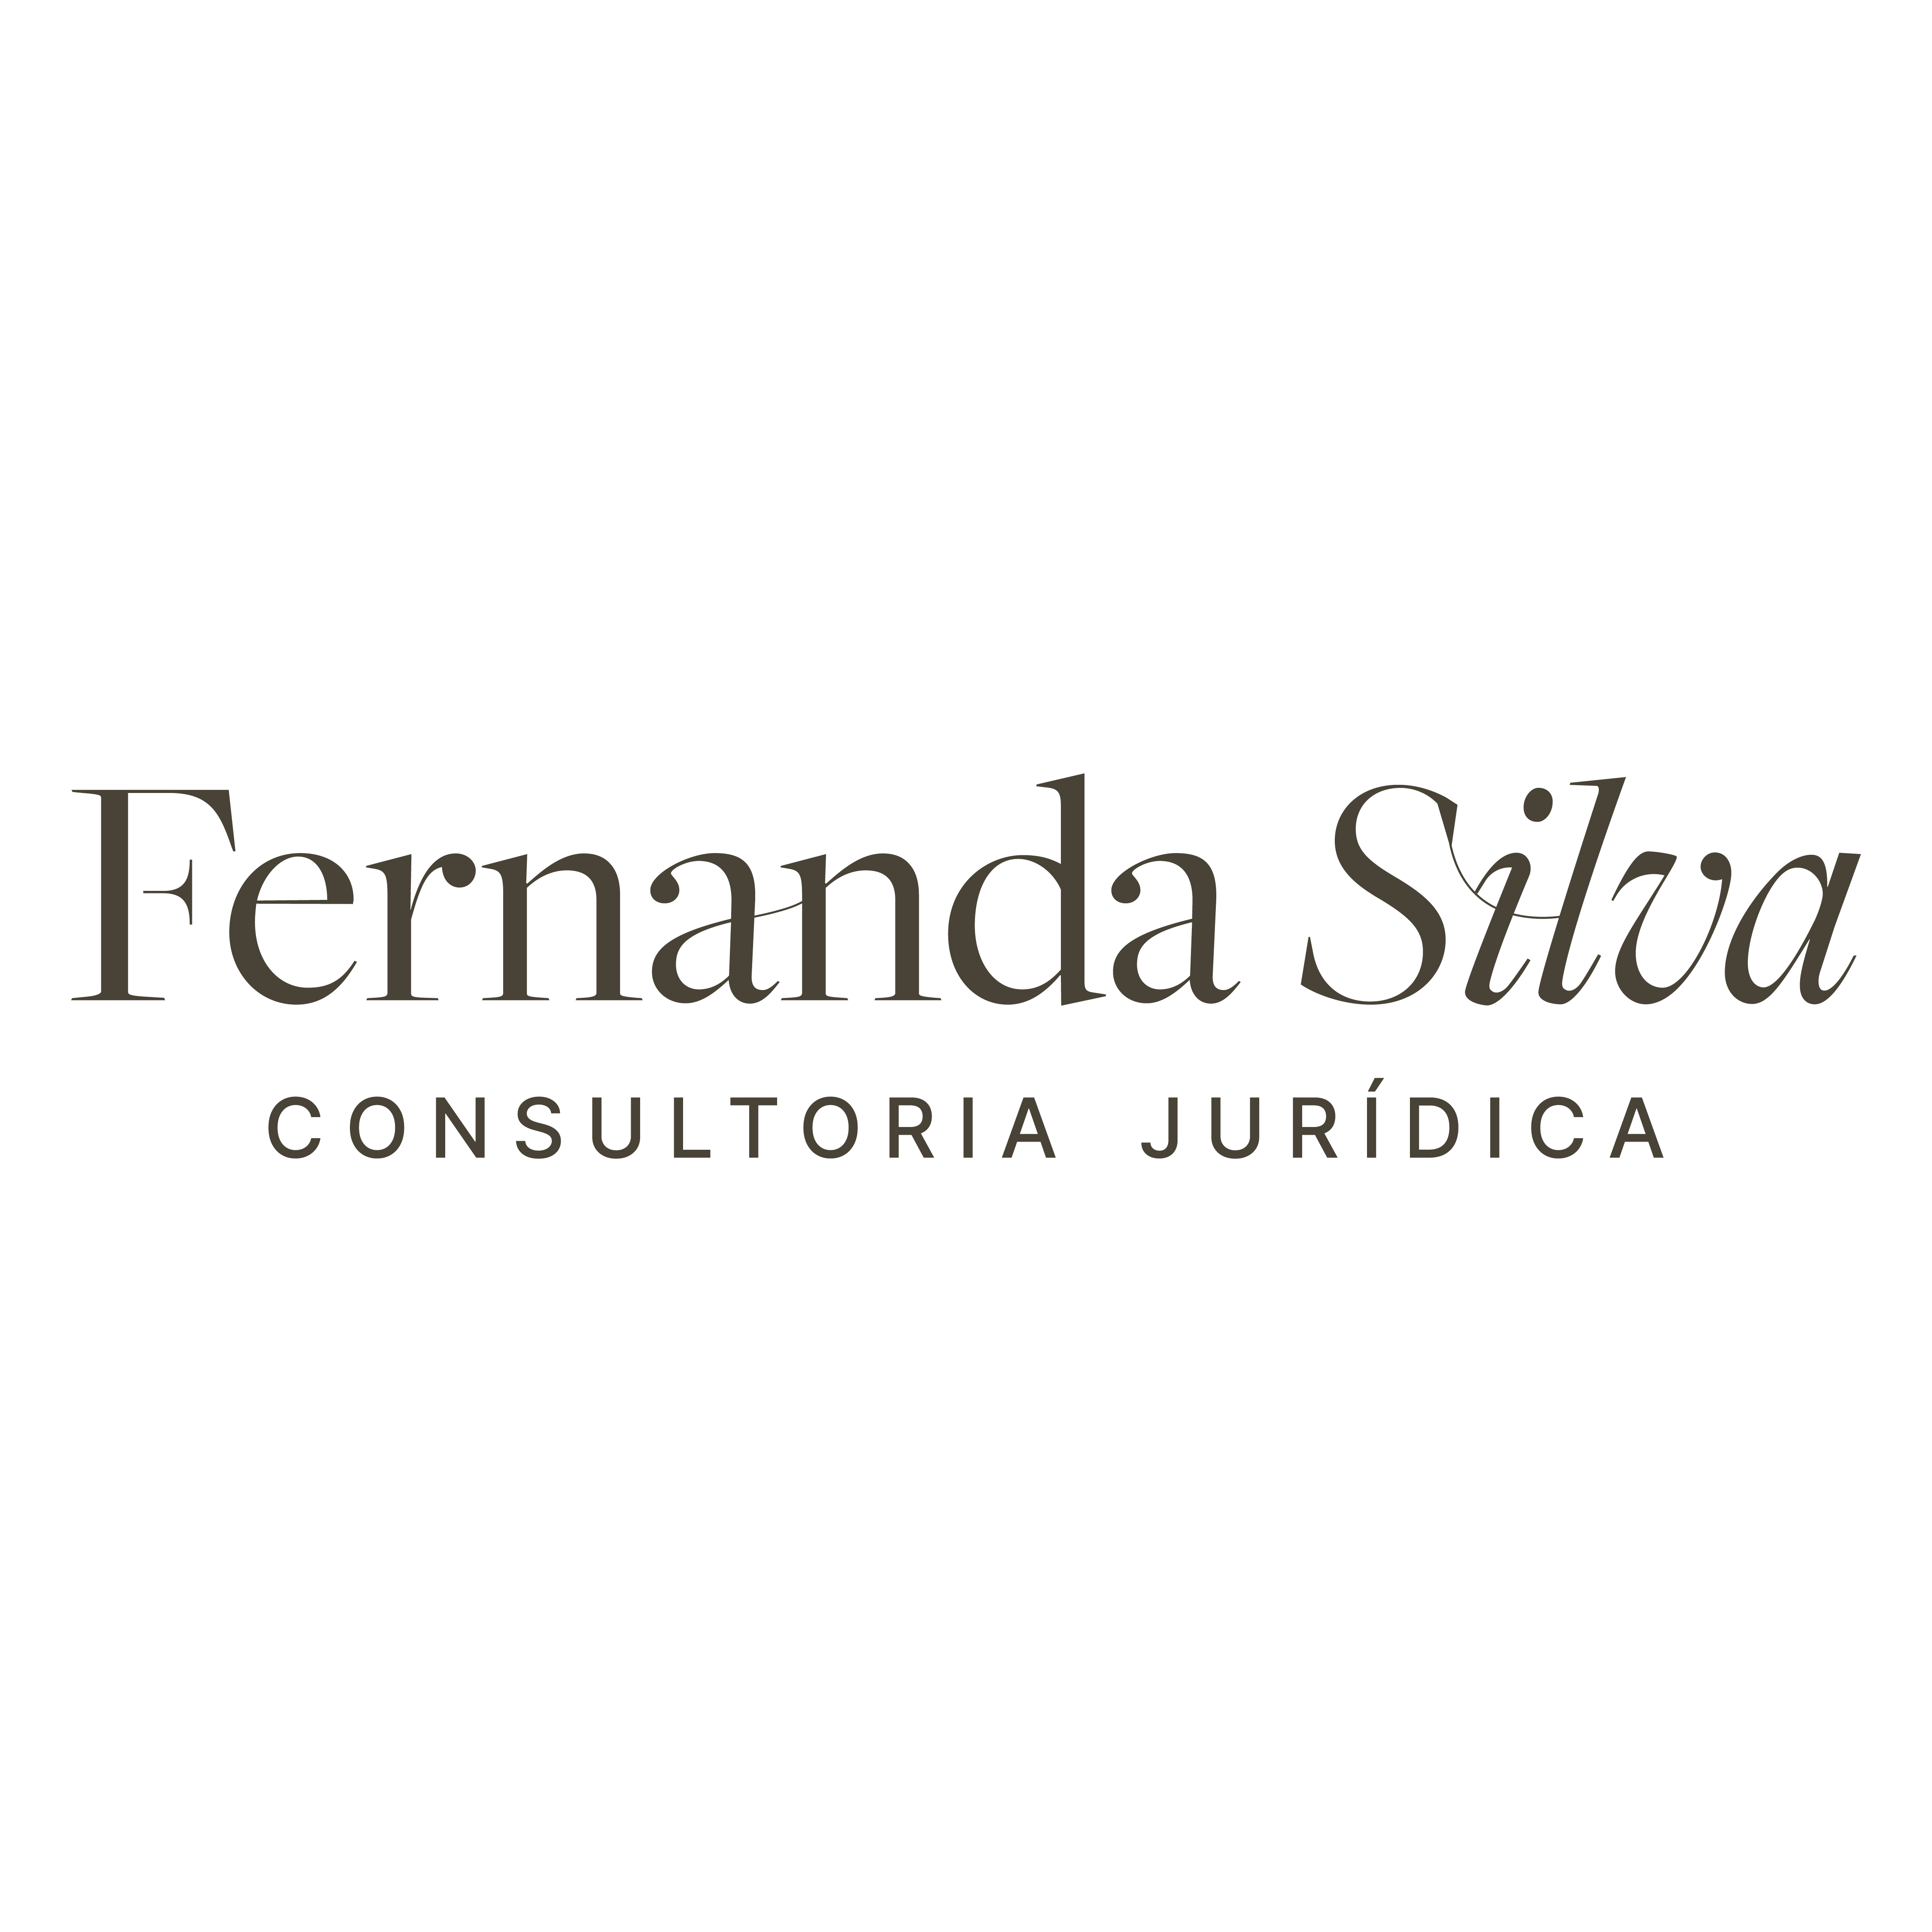 Fernanda Silva - Consultoria Jurídica